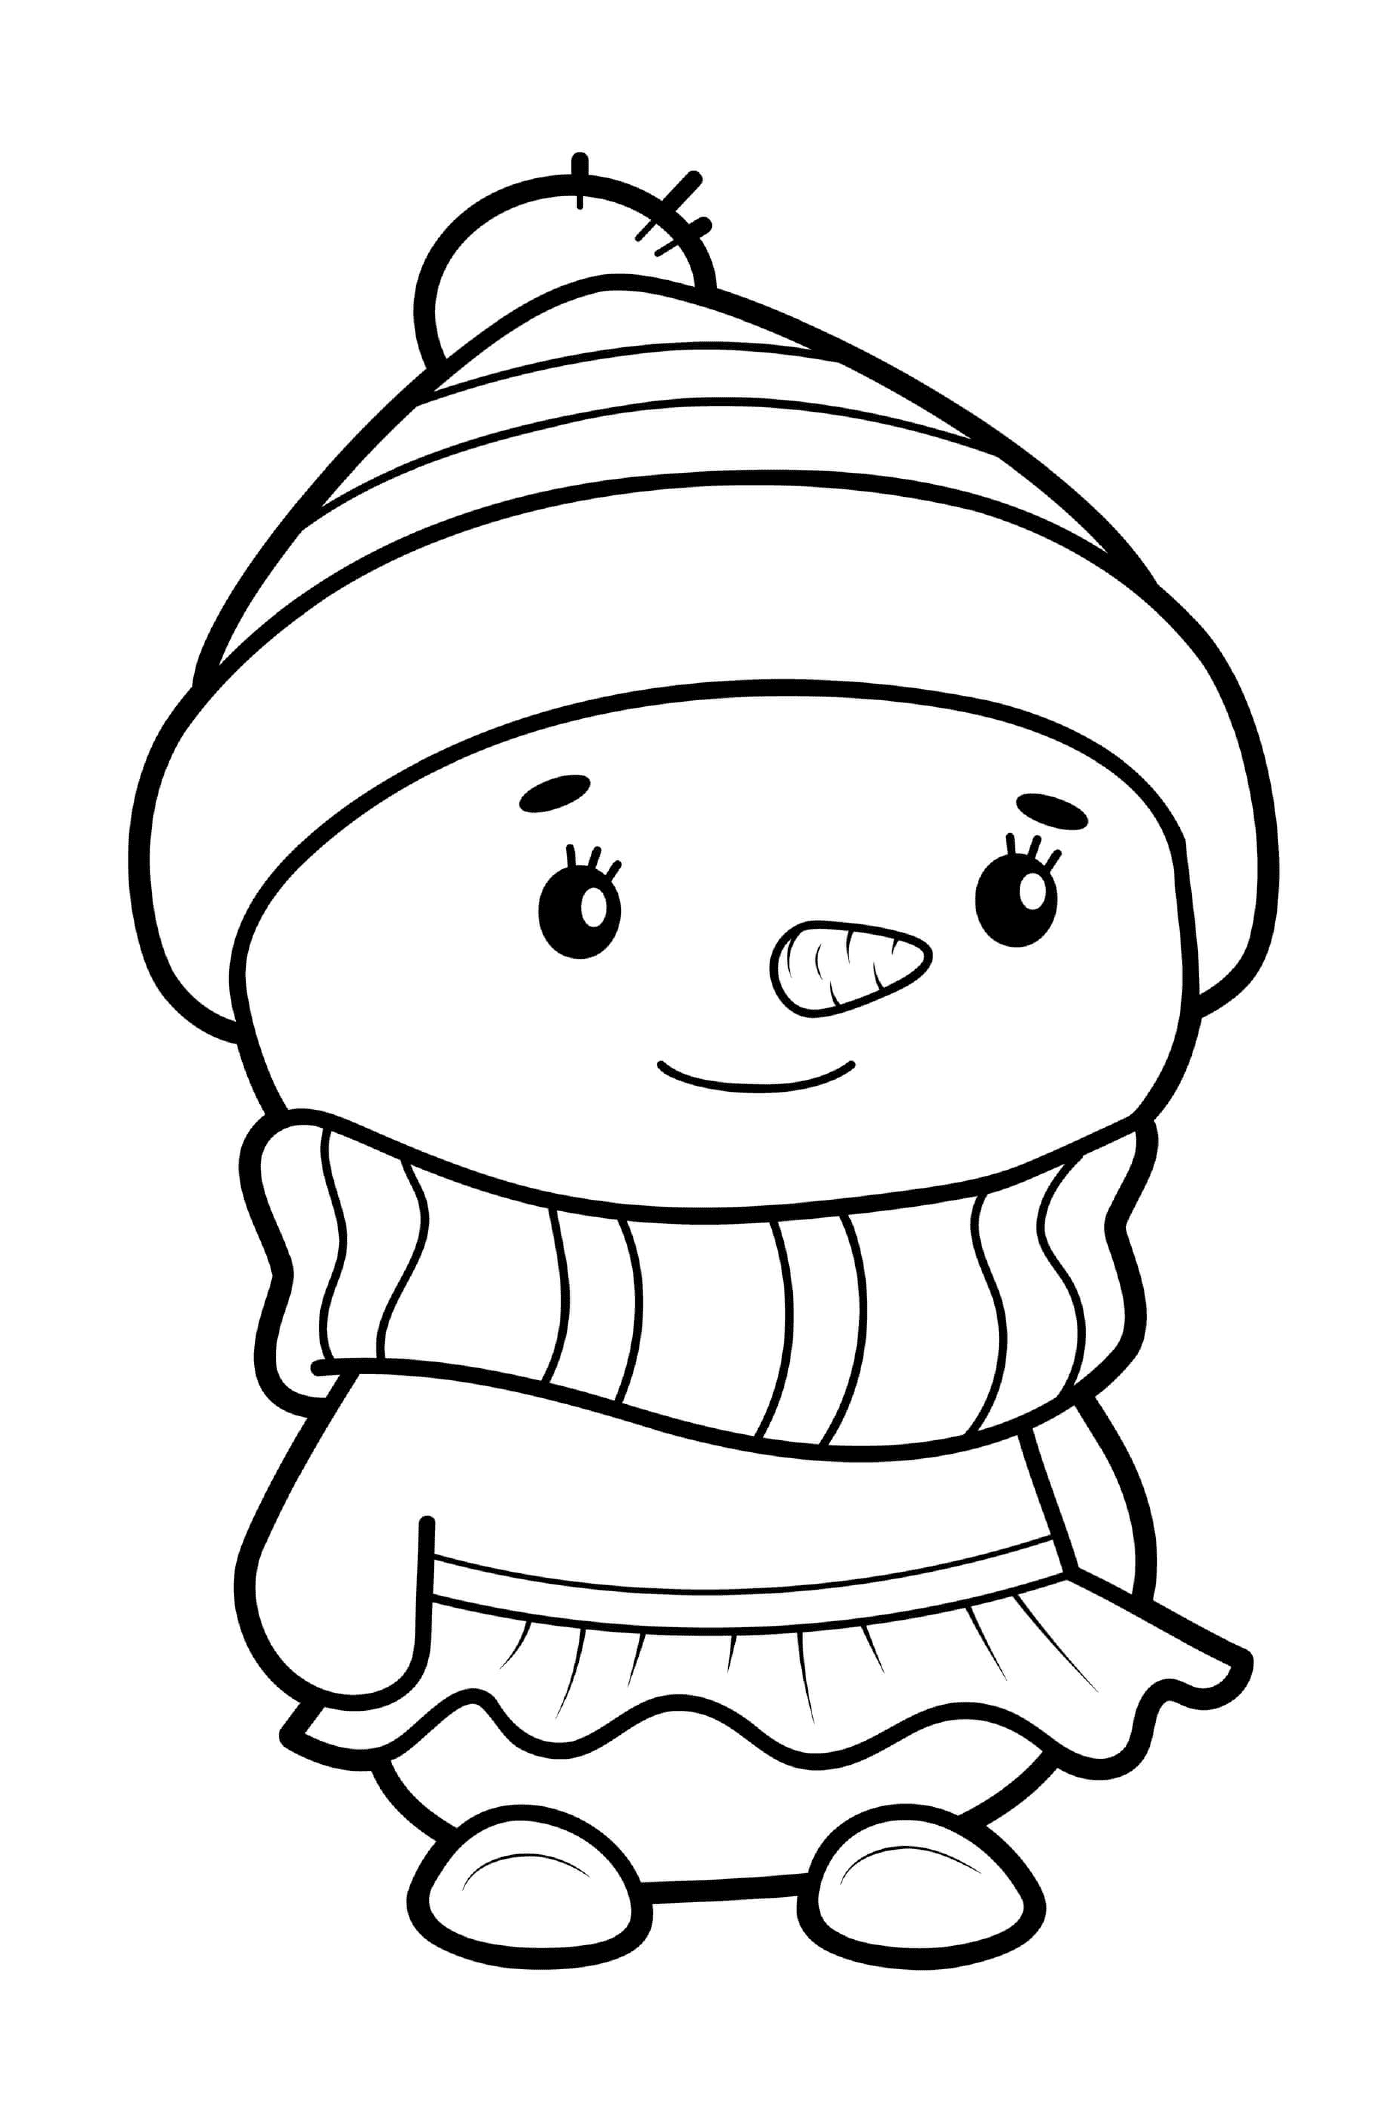  Снежный человек, одетый в девушку с платьем и шляпой 